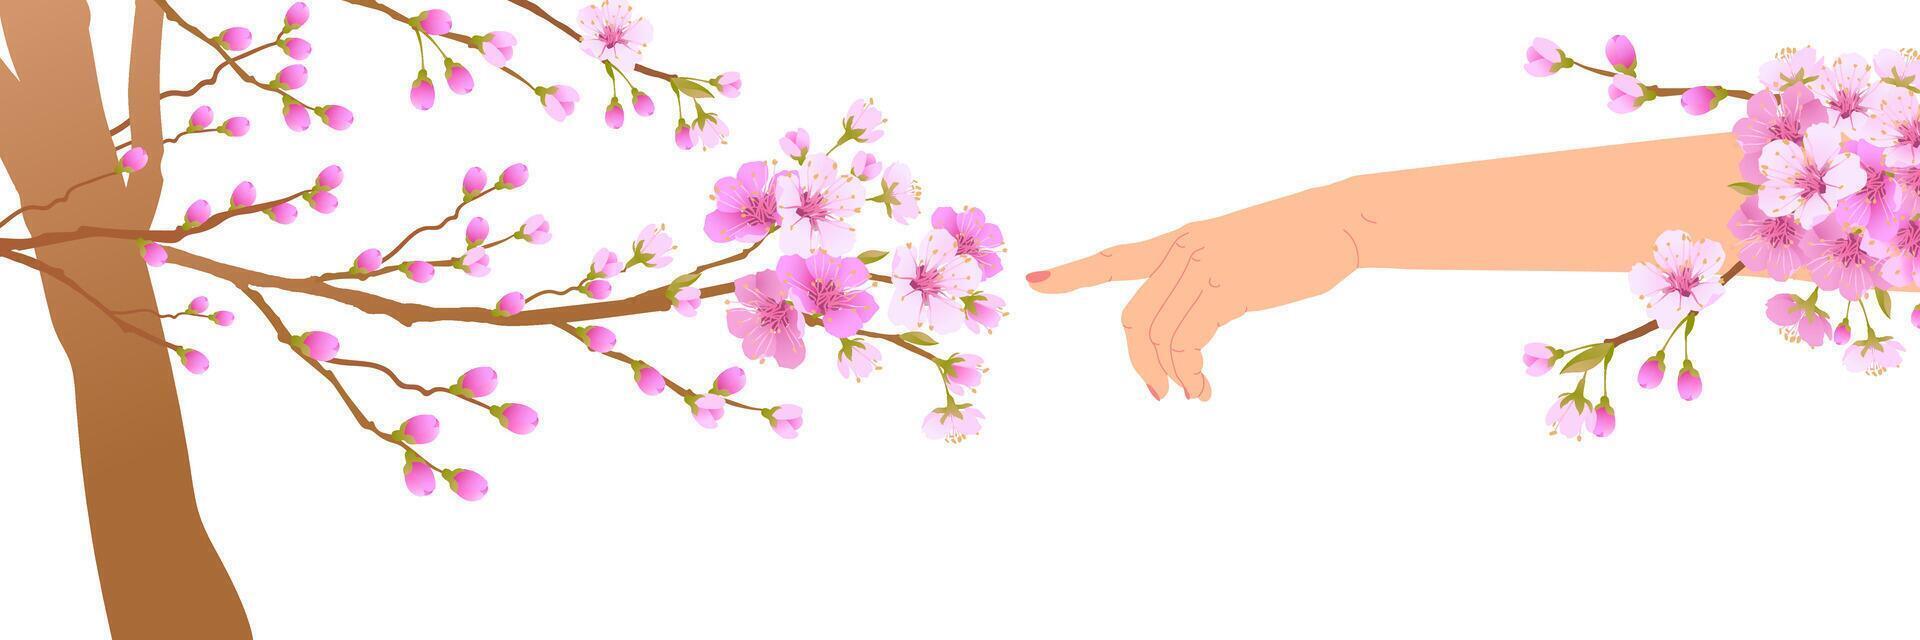 das Blumen auf das Geäst von das Kirsche Baum Start zu blühen beim das berühren von ein Hand. das Konzept von das Ankunft von Frühling und das Erwachen von Natur nach Winter. Vektor Illustration.